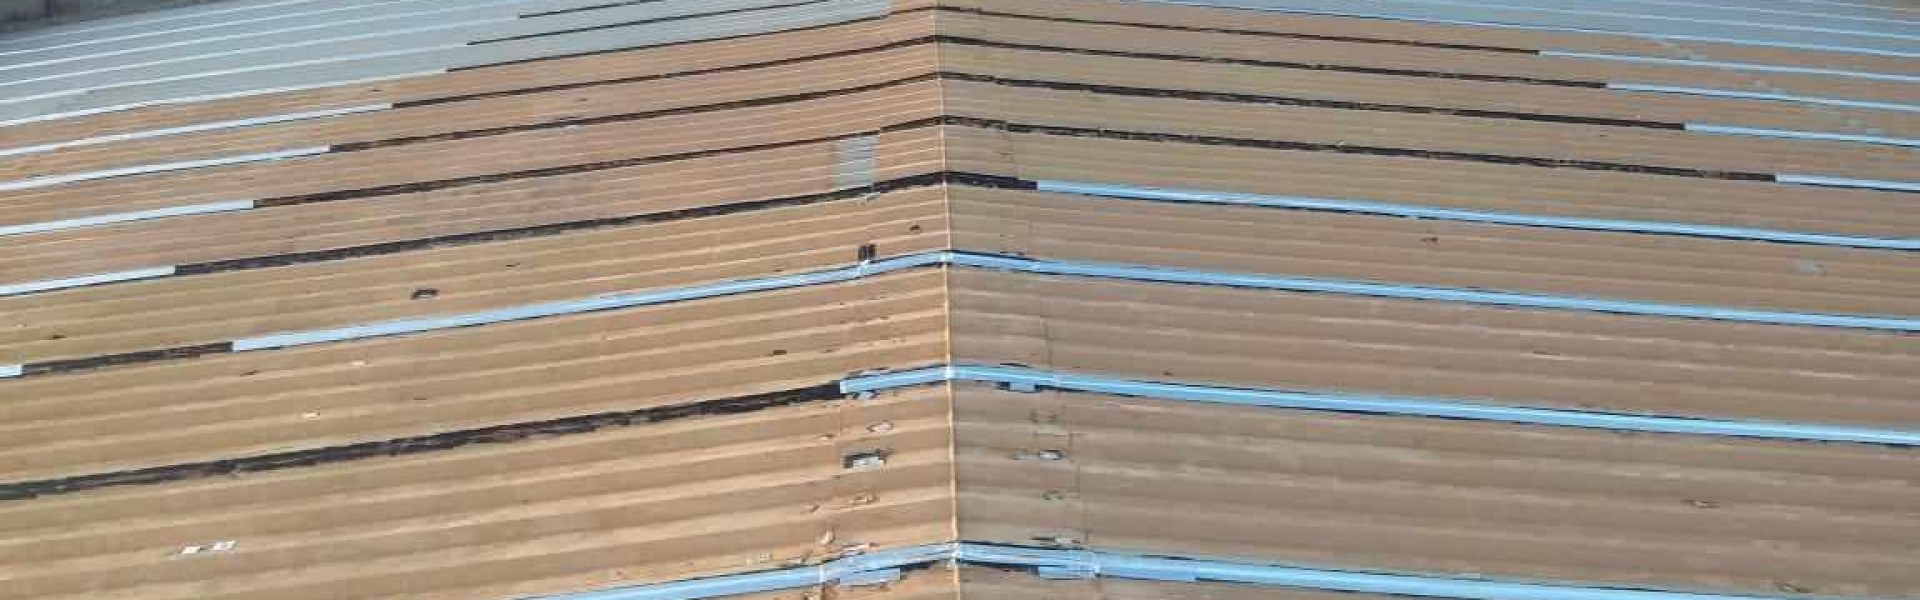 Impermeabilização de telhados galvanizados e fibrocimento, manta aluminada prime.